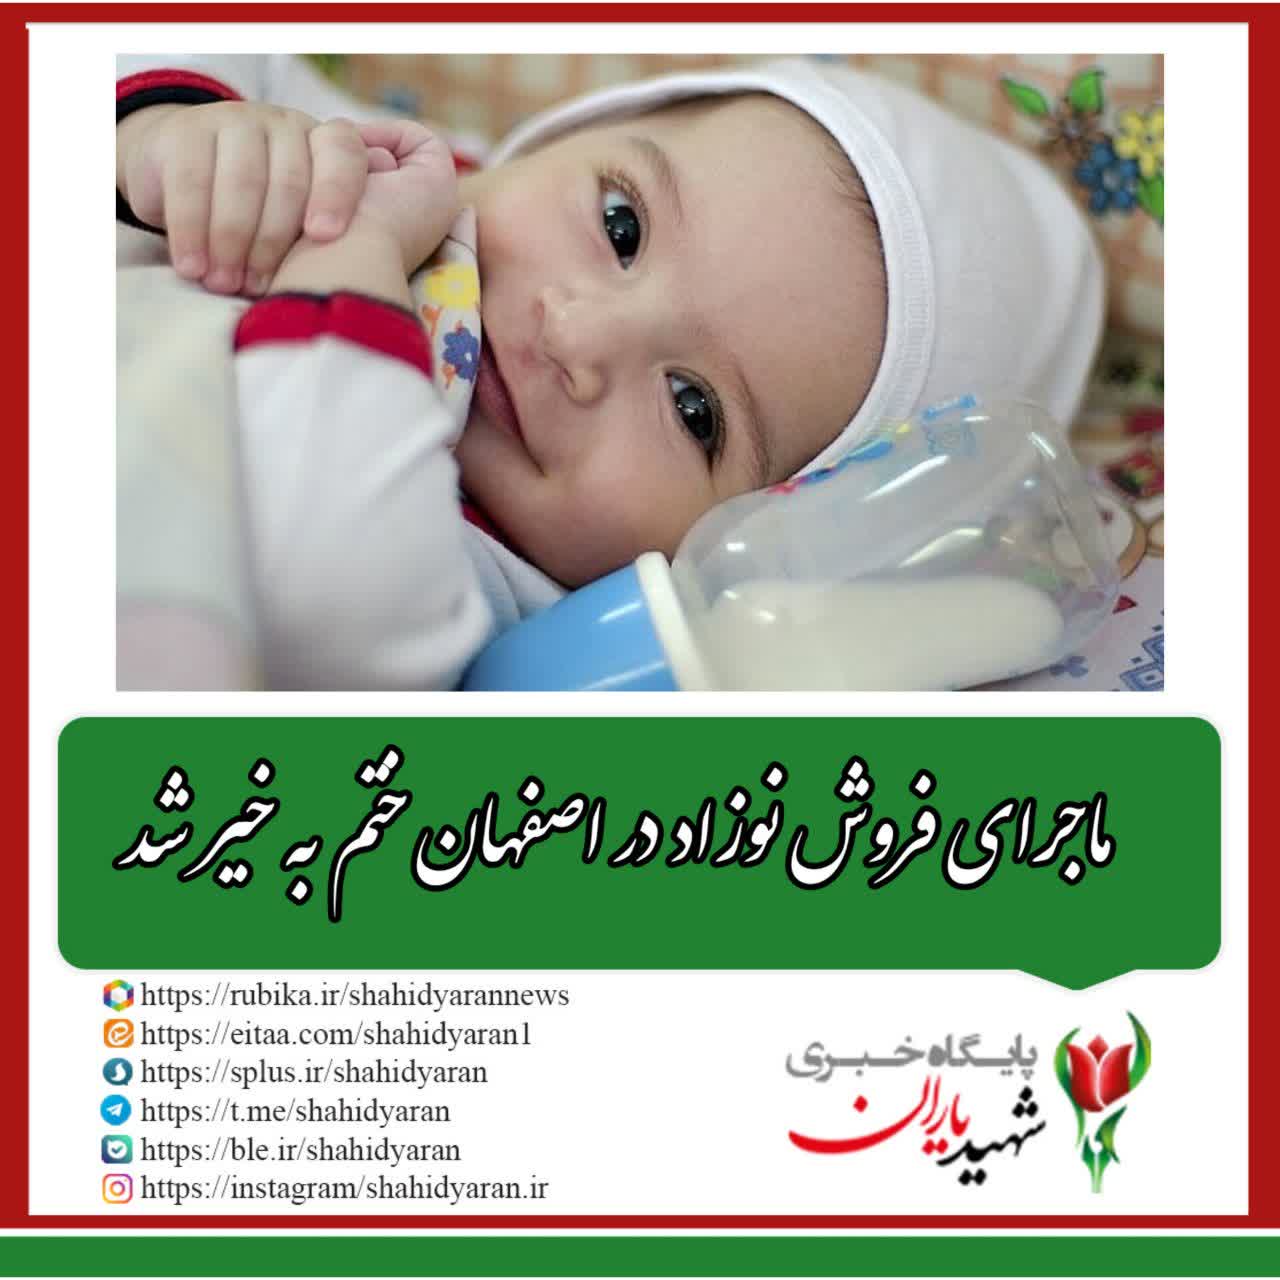 ماجرای فروش نوزاد در اصفهان ختم به خیر شد